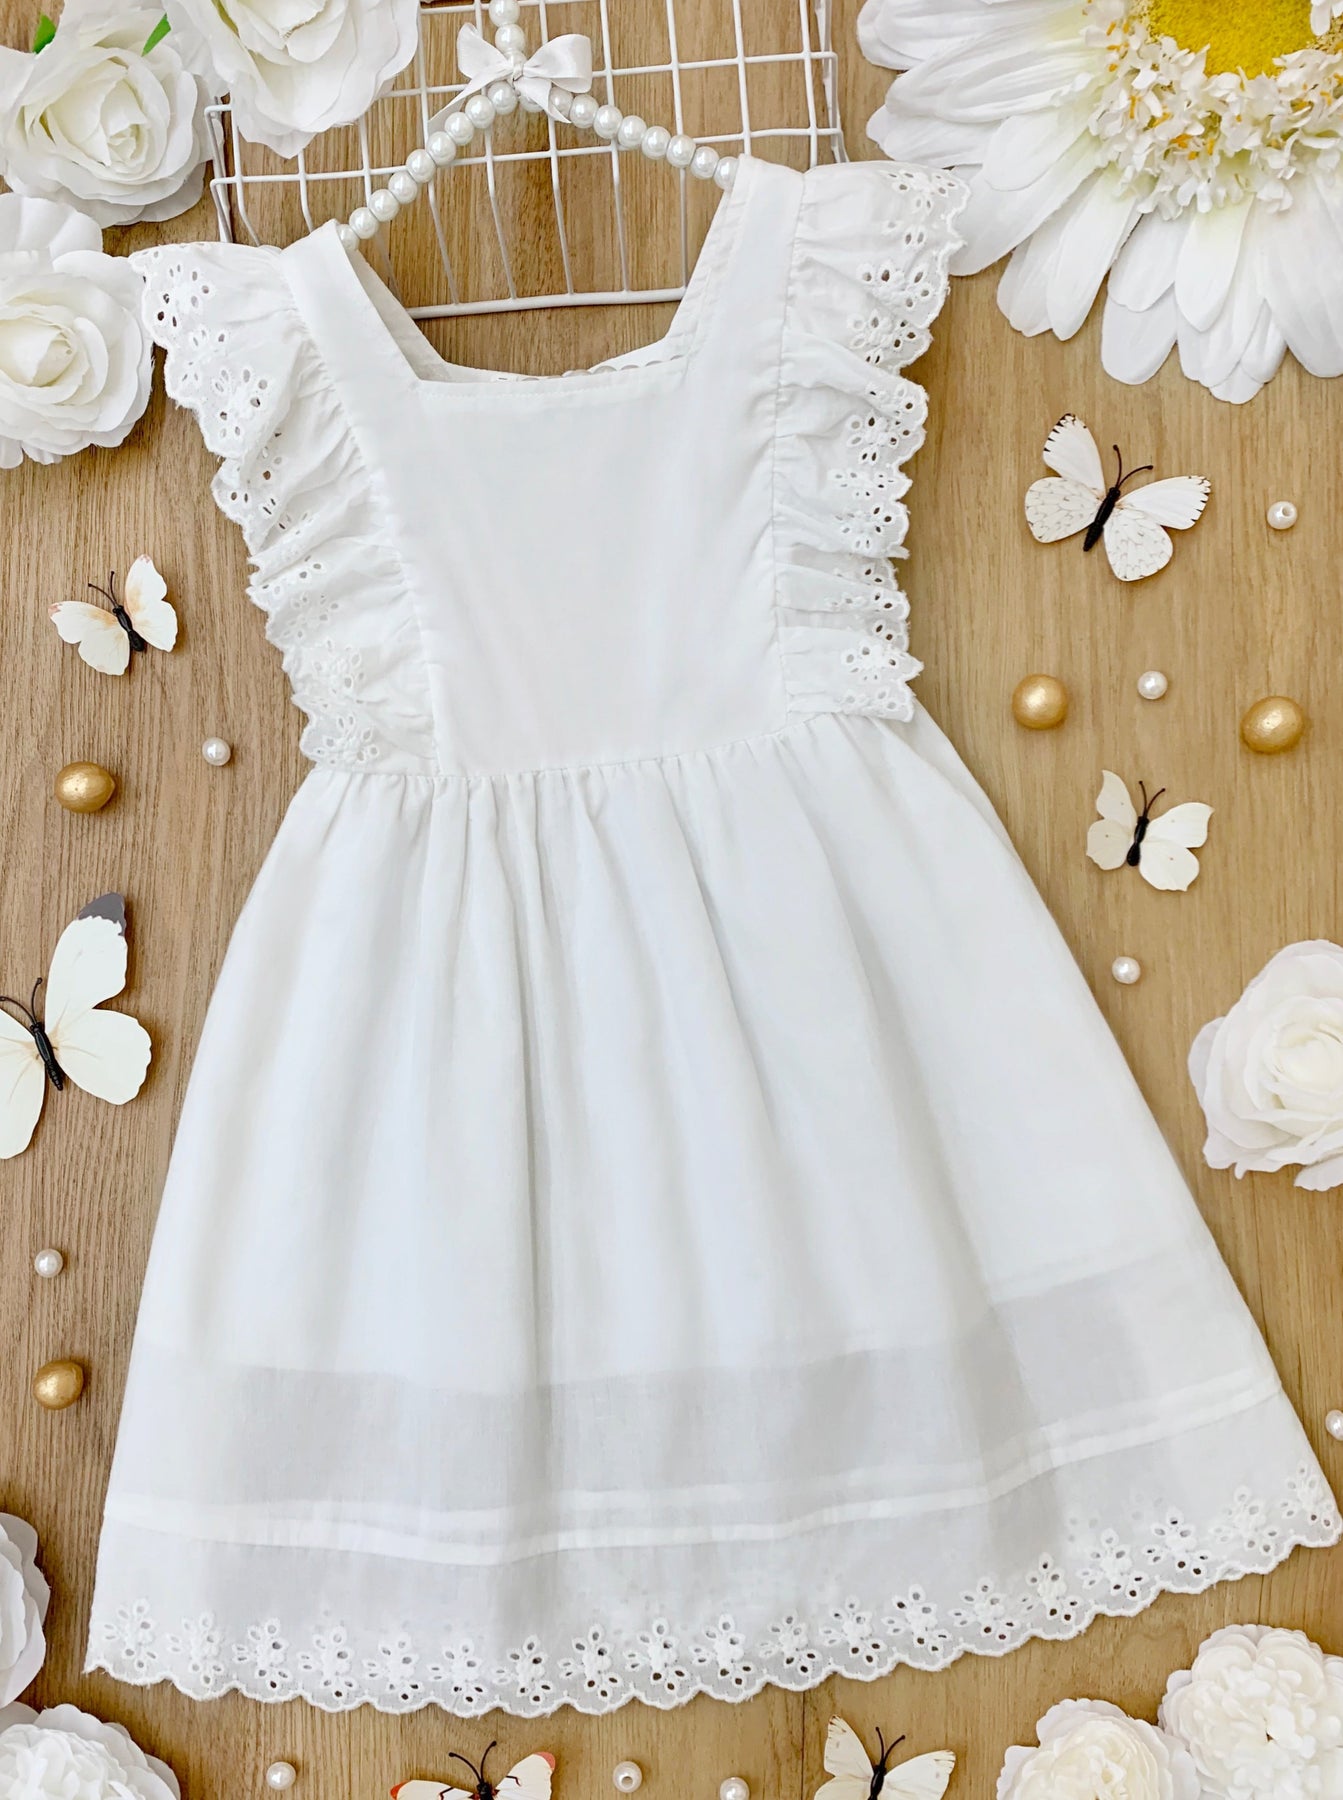 Girls White Eyelet Angel Ruffled Embroidered Dress - Mia Belle Girls